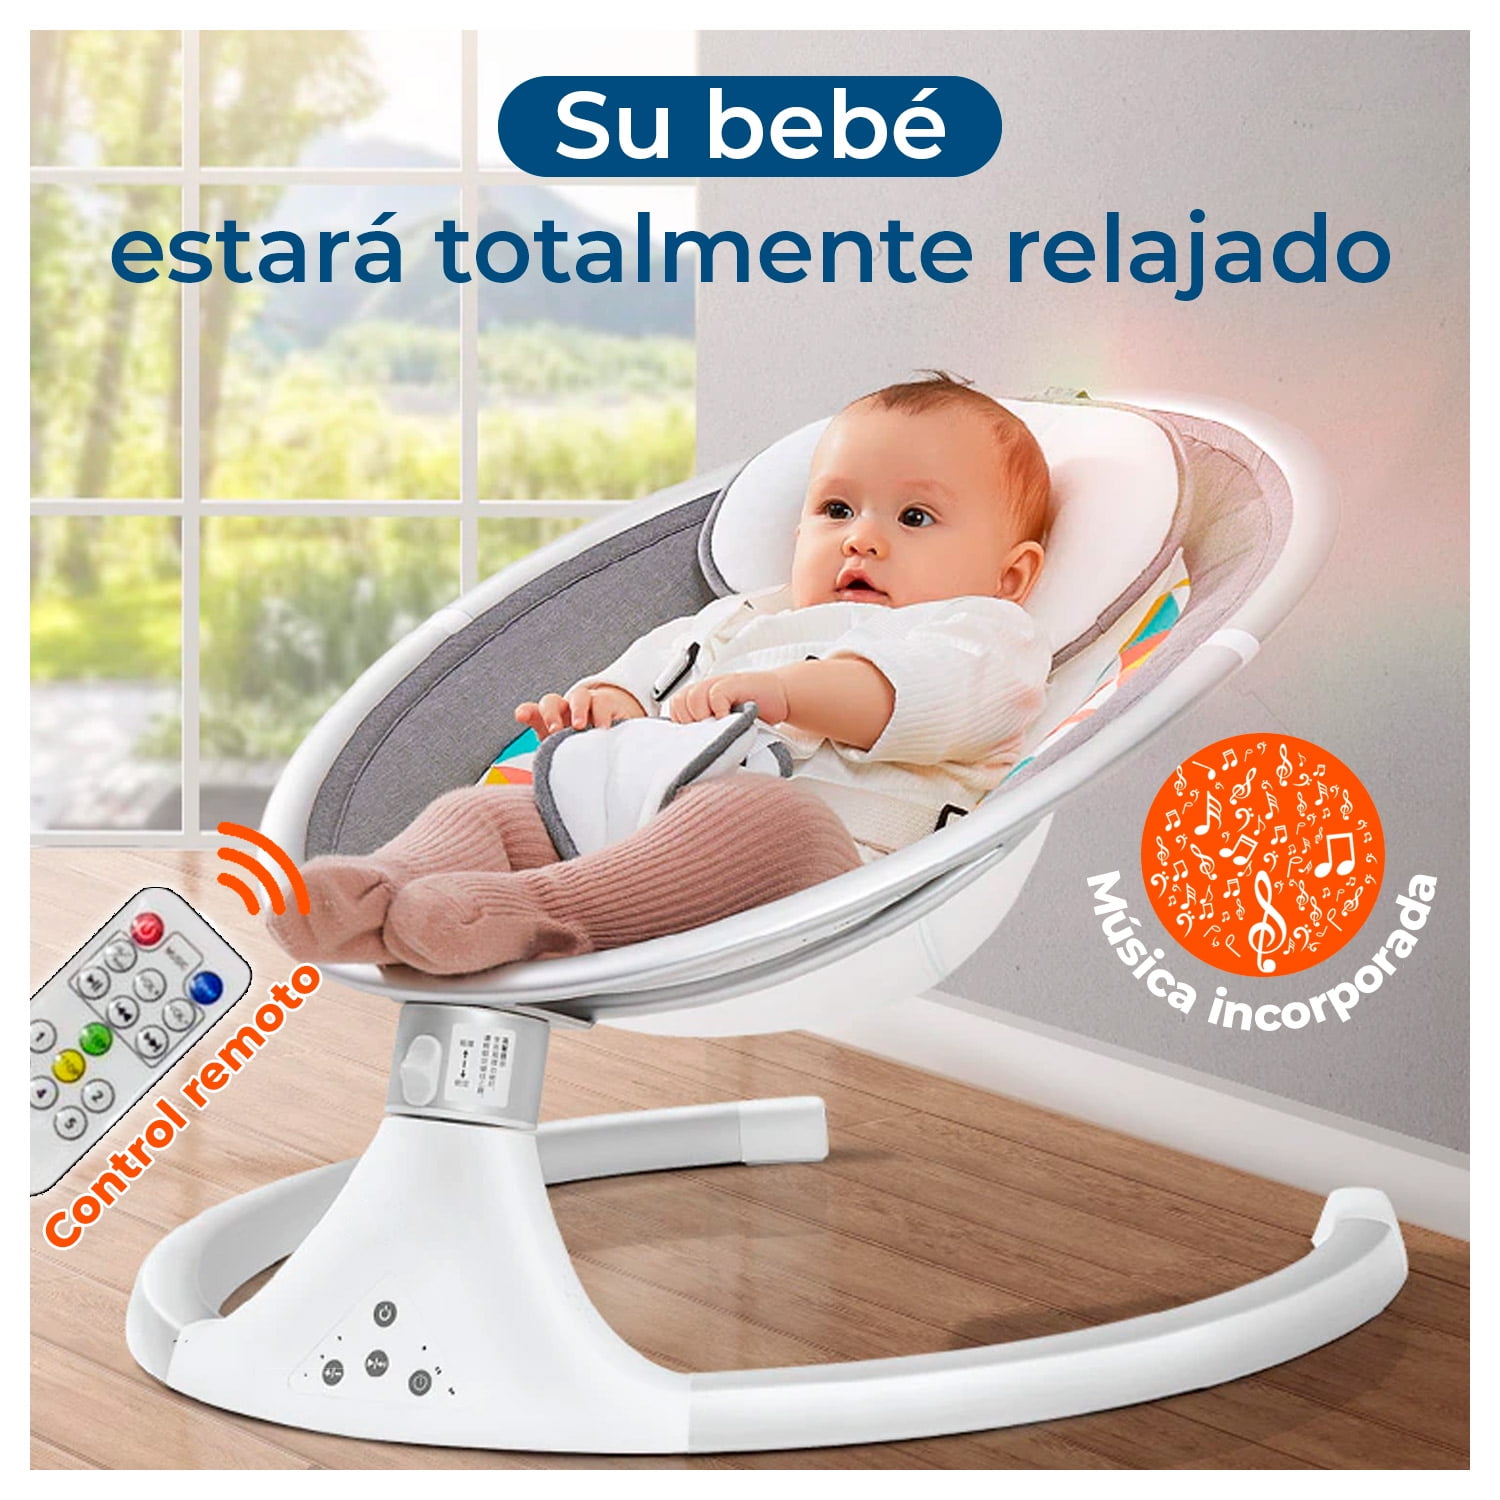 Nublado chupar Persona a cargo del juego deportivo Silla cuna Mecedora automática bebe control remoto Global Latin | Lider.cl